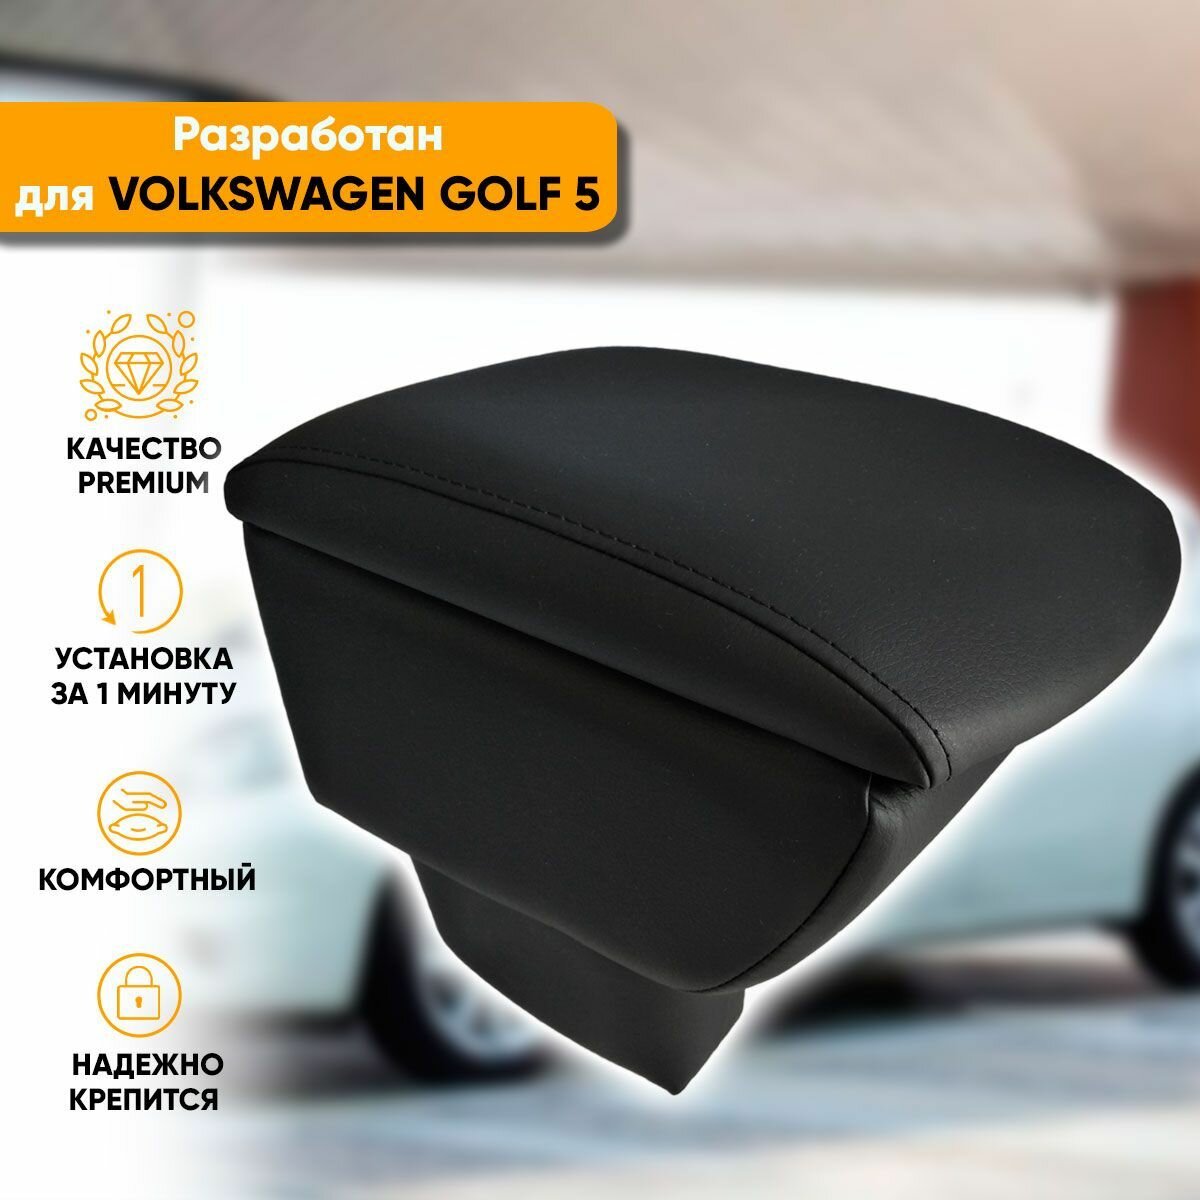 Подлокотник Volkswagen Golf 5 / Фольксваген Гольф 5 (2003-2009) легкосъемный (без сверления) с деревянным каркасом (+ мягкий поролон и экокожа), цвет серый, исполнение "Премиум"